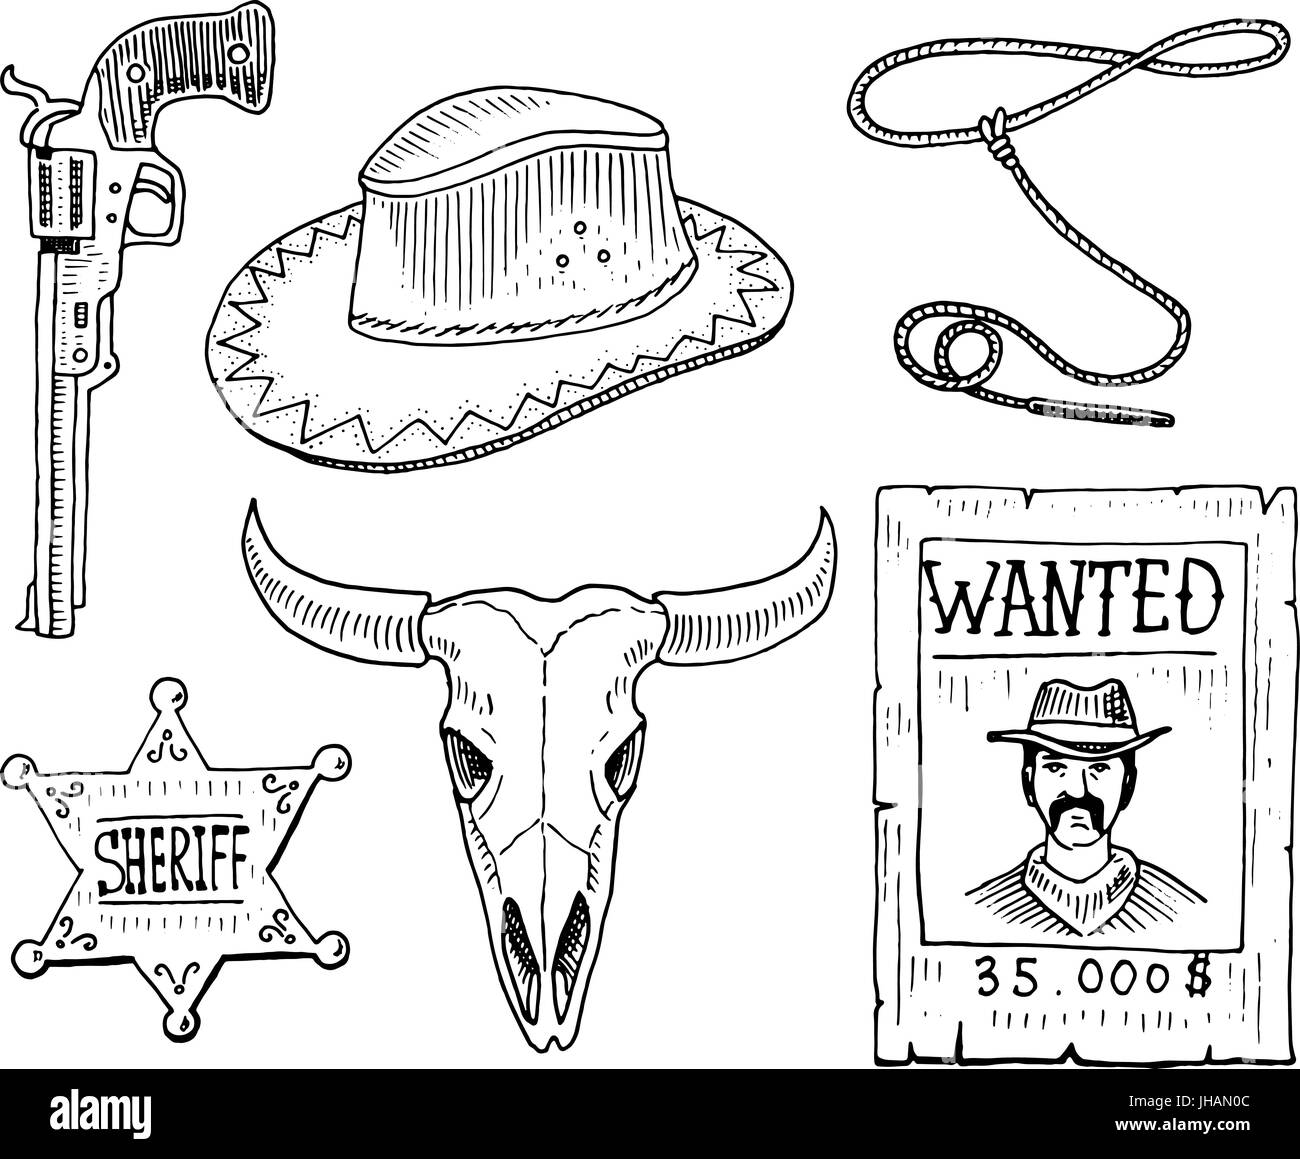 Wild West Show, Rodeo Cowboy, ou des indiens avec lasso. hat et gun, cactus avec fer à cheval, étoile de shérif et de bison, bull skull et avis de recherche. gravés à la main dans de vieux croquis et de l'esprit vintage. Illustration de Vecteur